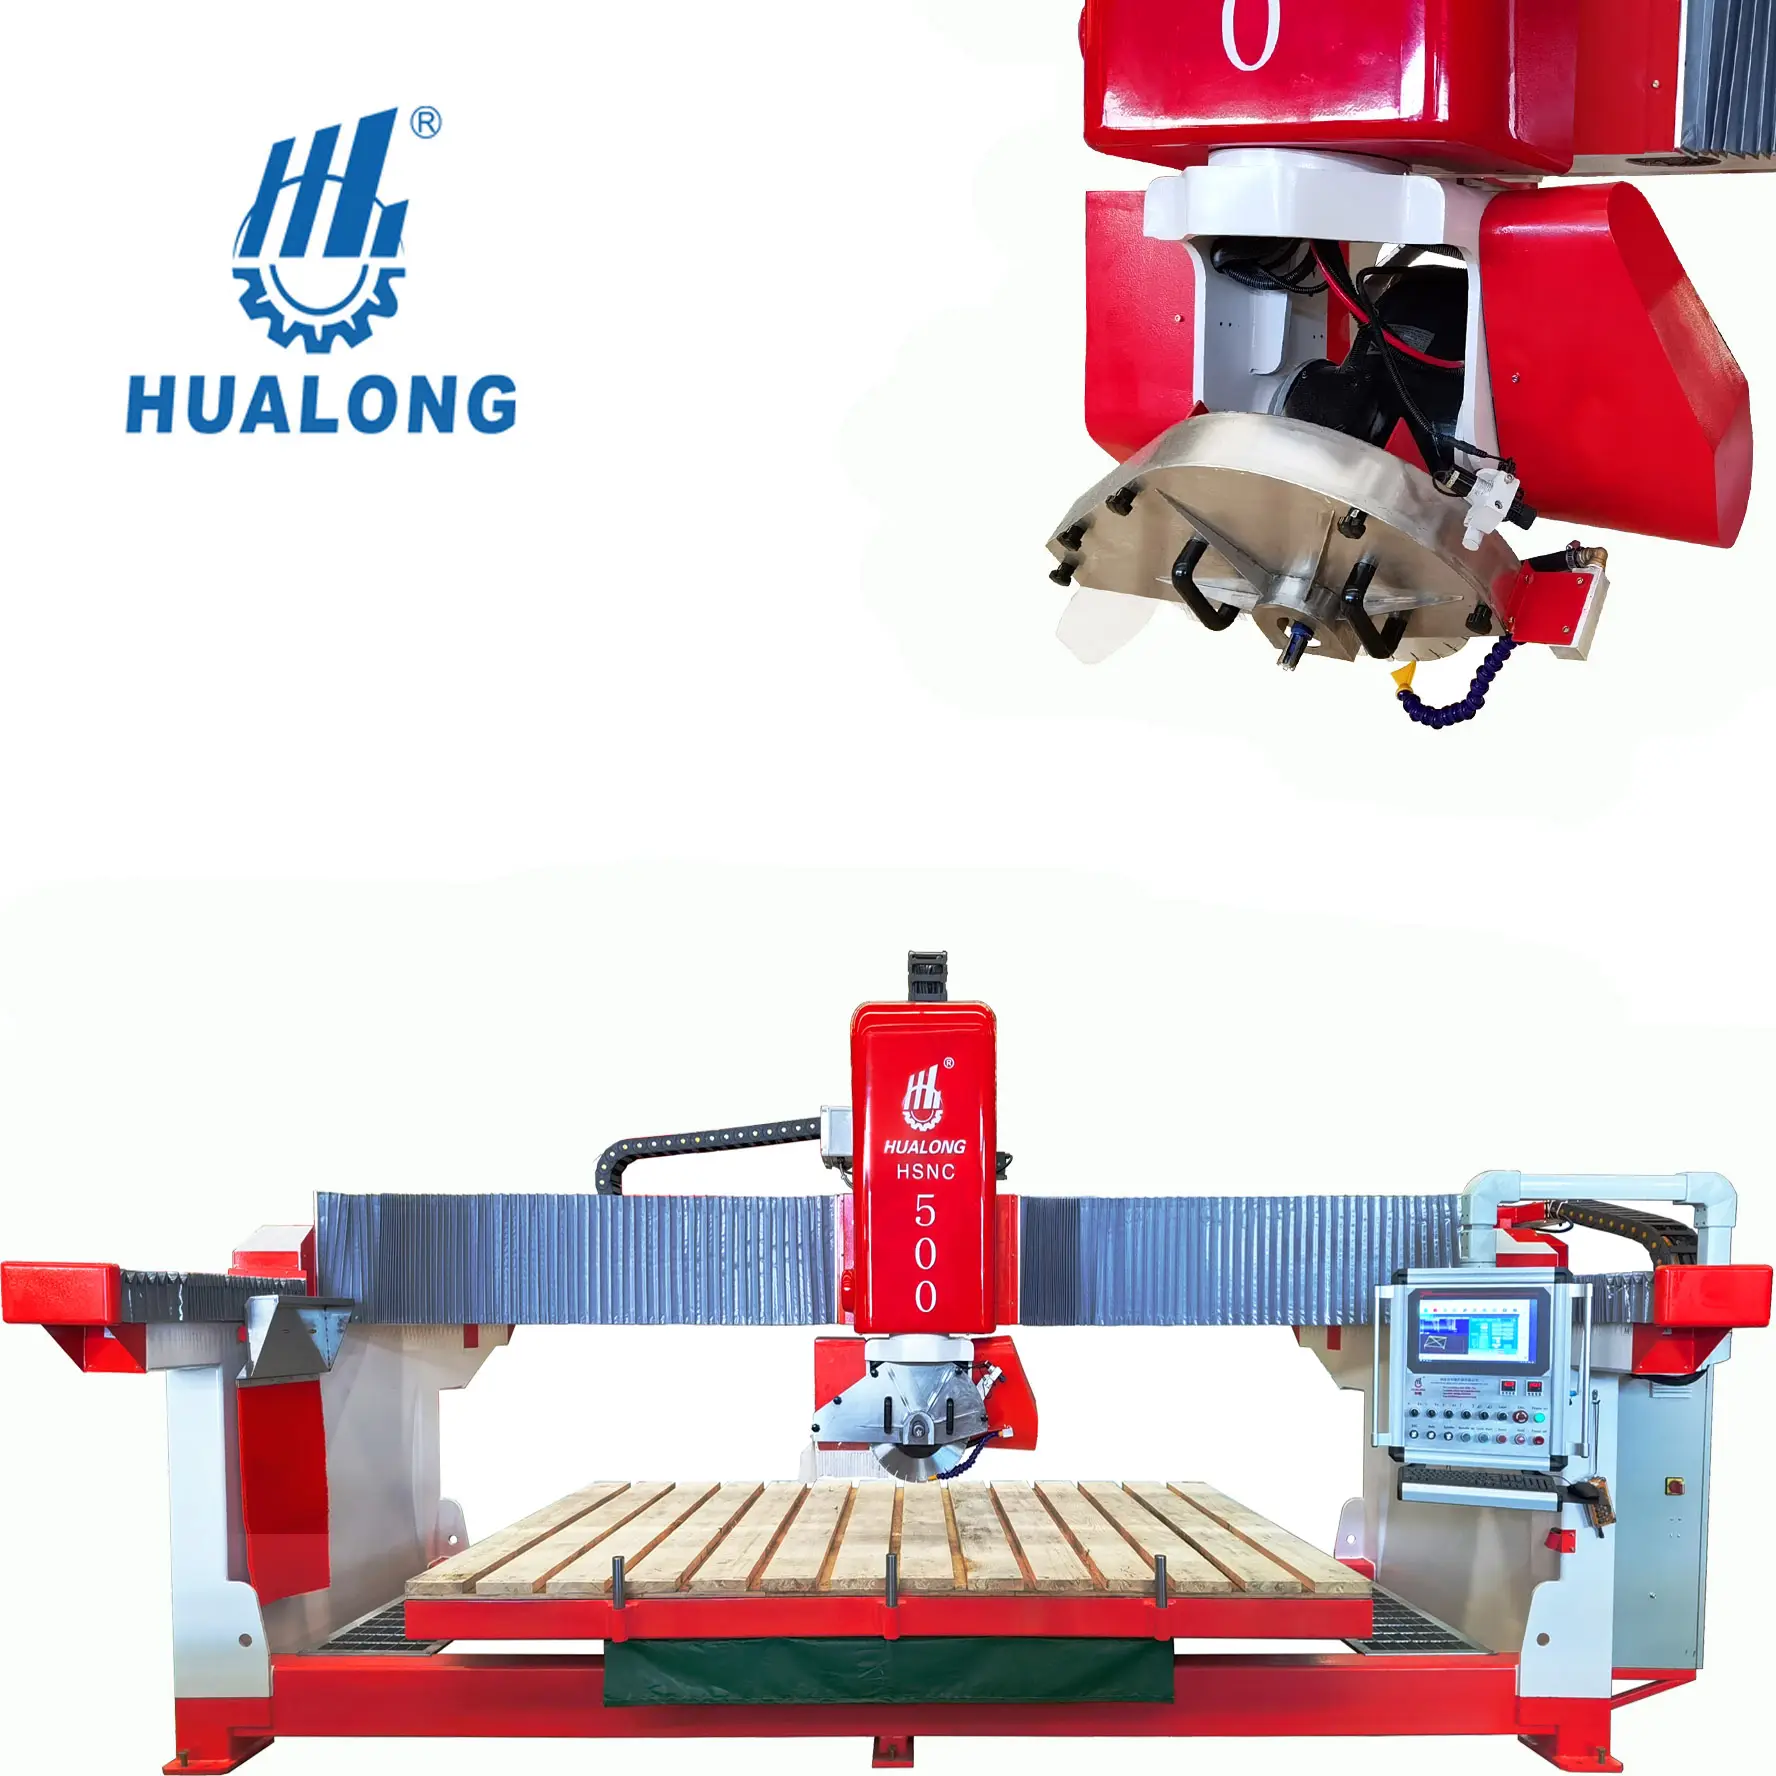 Hulong maquinaria, 5 eixos cnc ponte serra pedra mármore máquina de corte para slab com sistema italiano venda imperdível